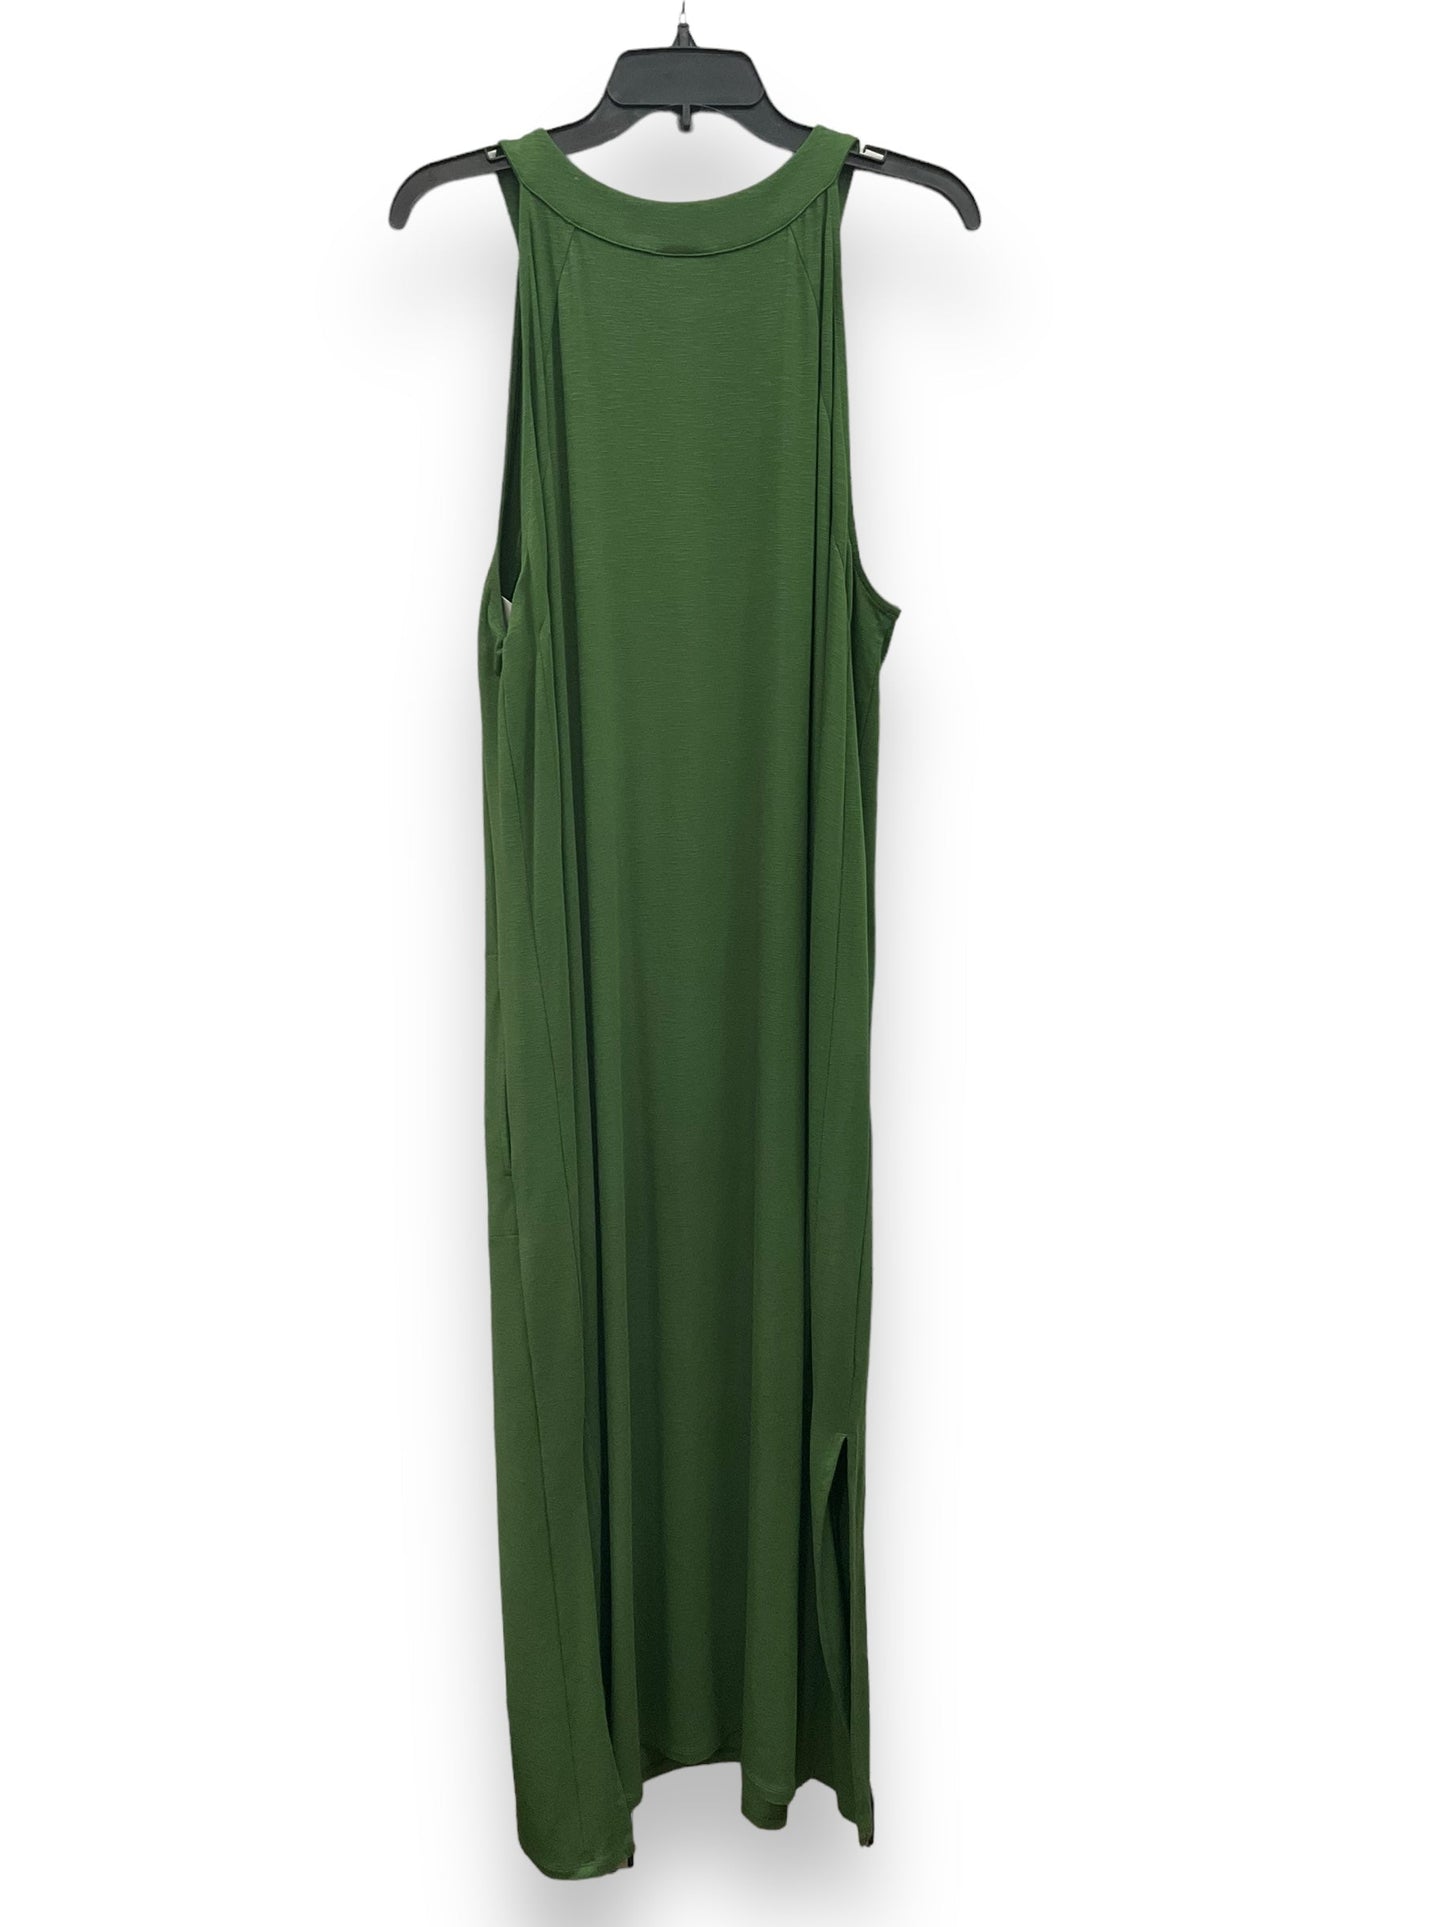 Green Dress Casual Maxi J. Jill, Size 2x